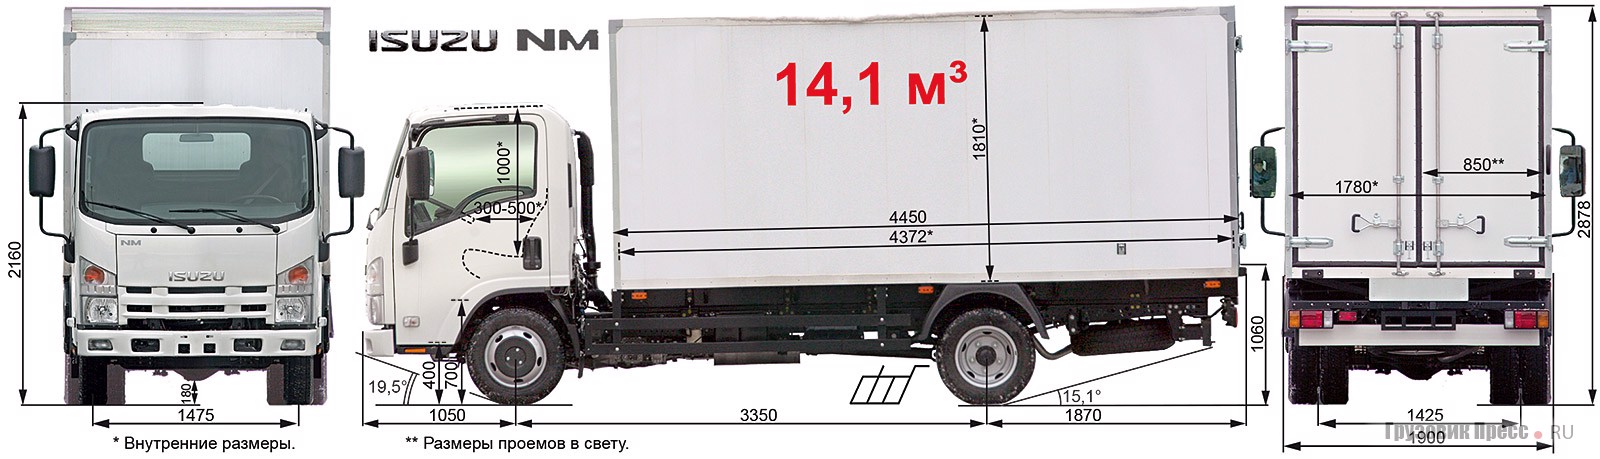 Тест-драйв грузовика Isuzu NMR 85 L, журнал «Грузовик Пресс»